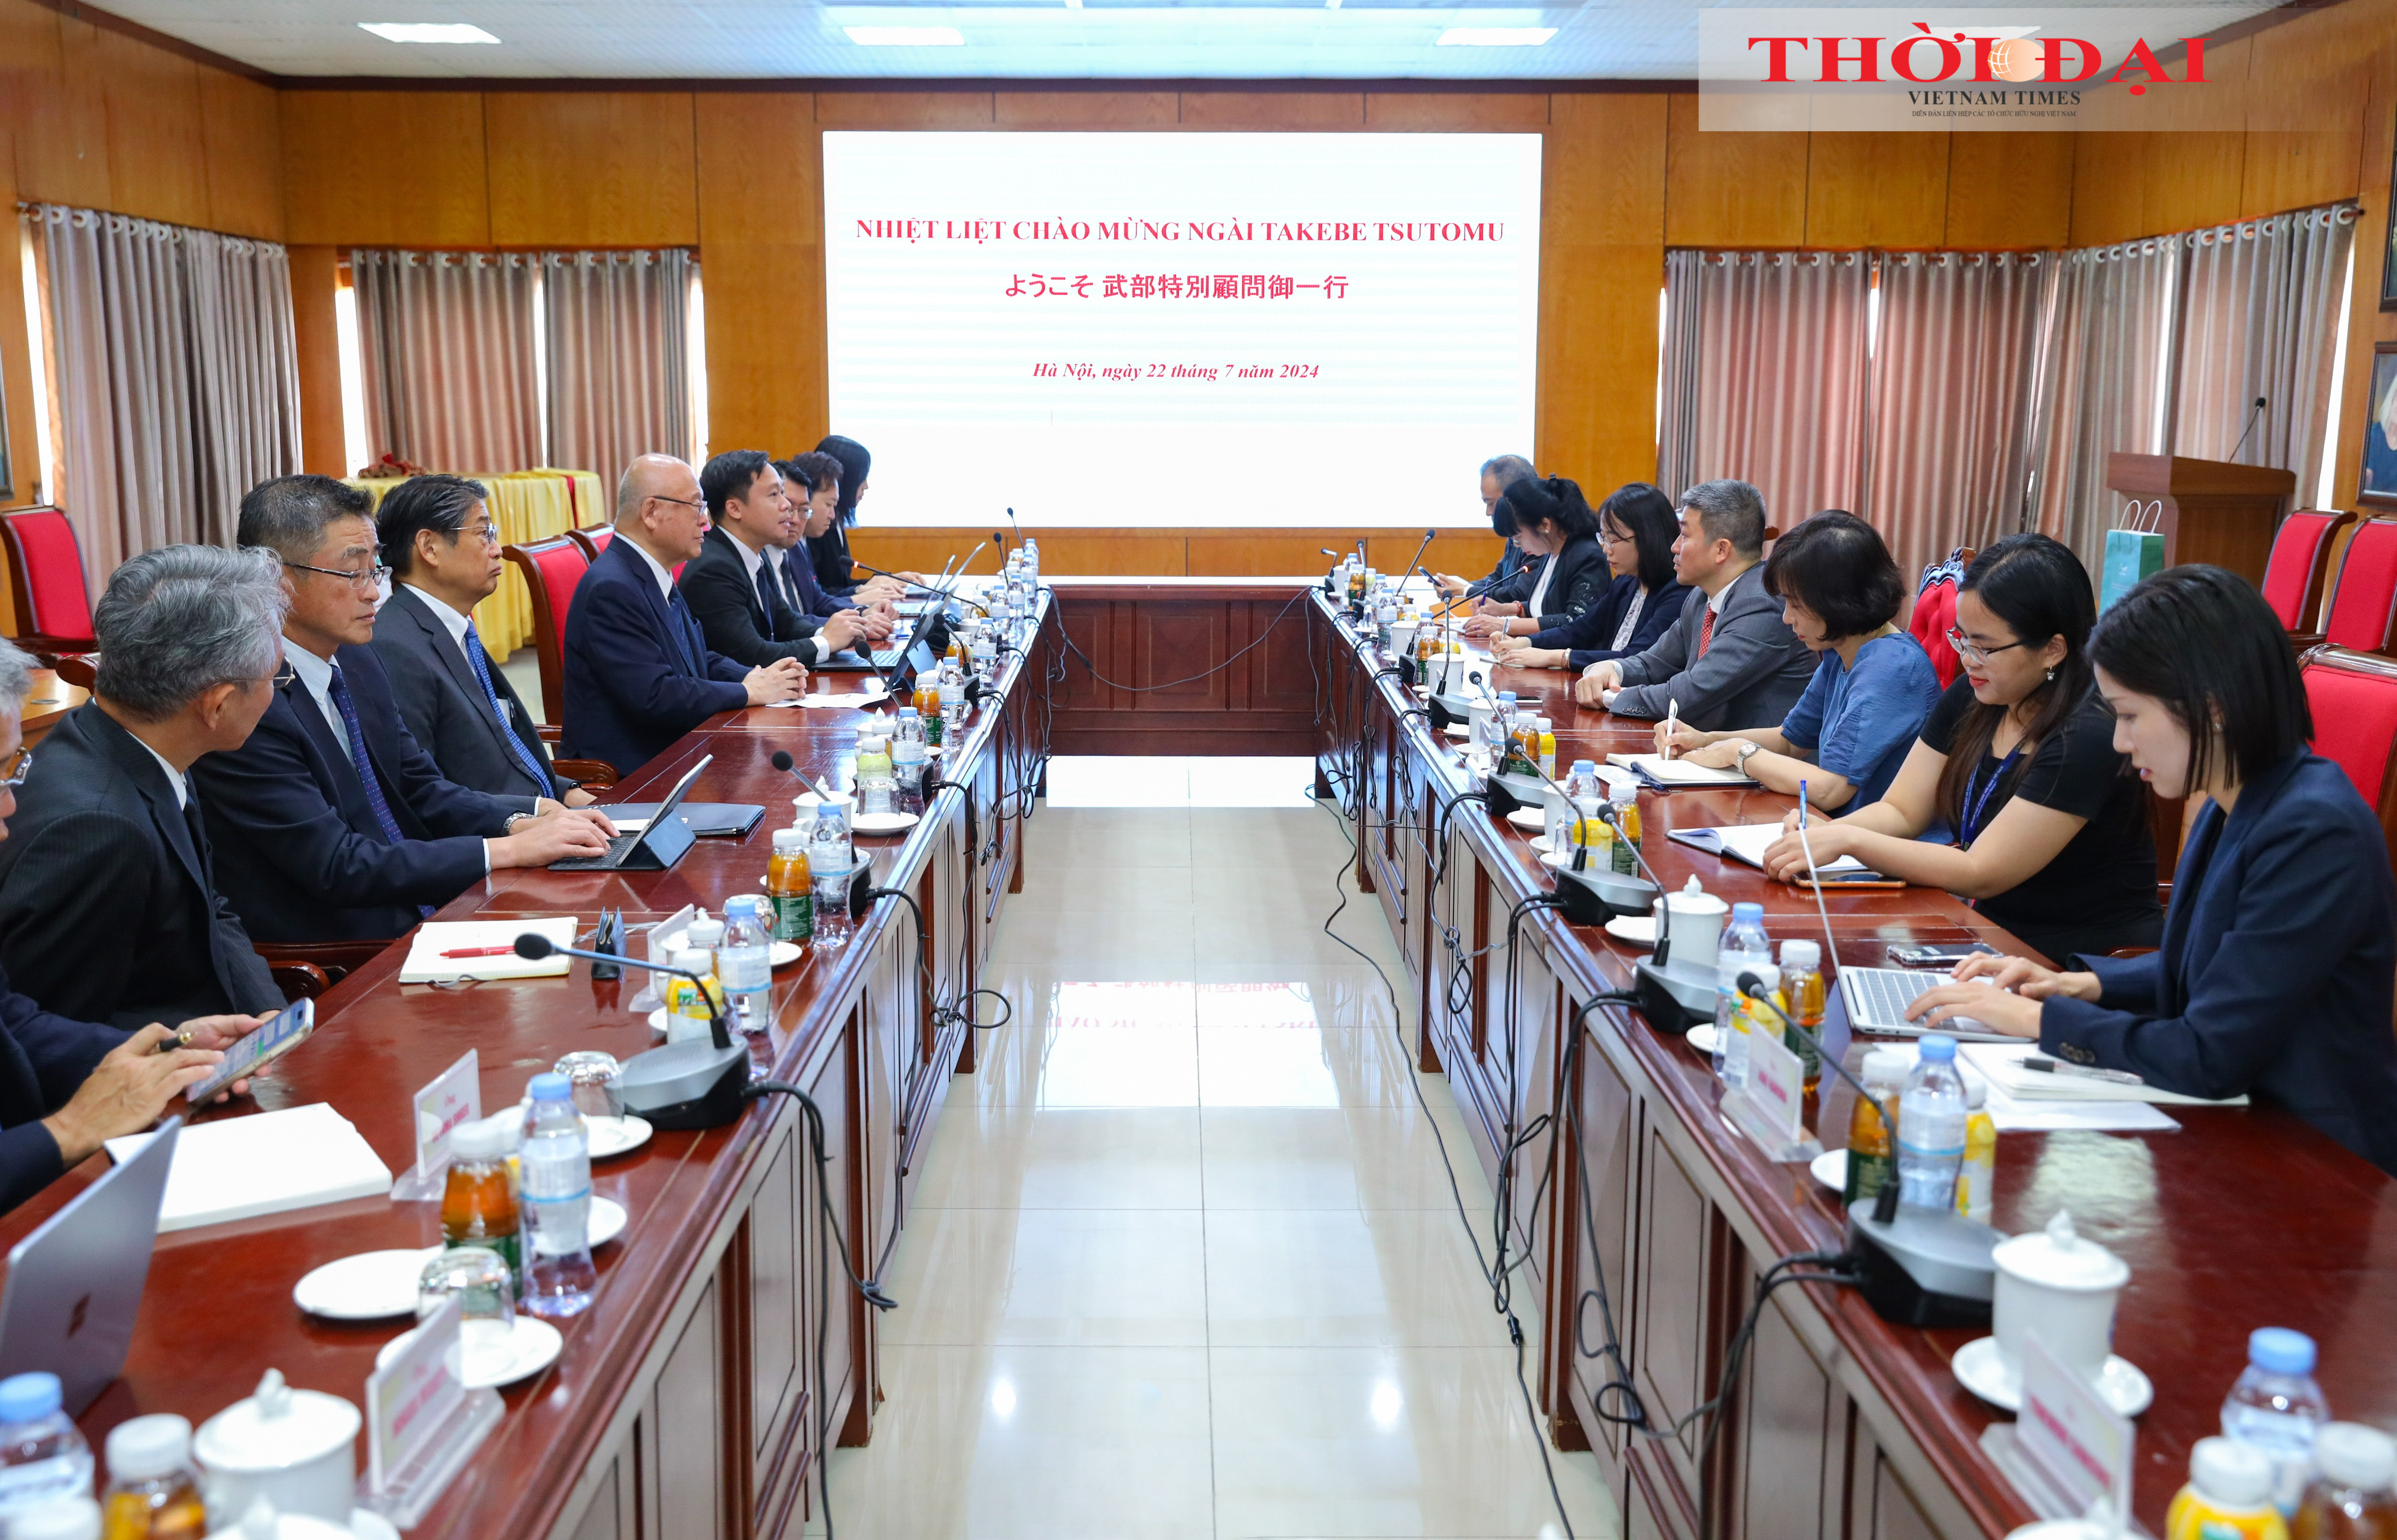  Liên hiệp các tổ chức hữu nghị Việt Nam tiếp ông Takebe Tsutomu, Cố vấn đặc biệt Liên minh nghị sĩ hữu nghị Nhật - Việt và đoàn công tác Nhật Bản. (Ảnh: Đinh Hòa)